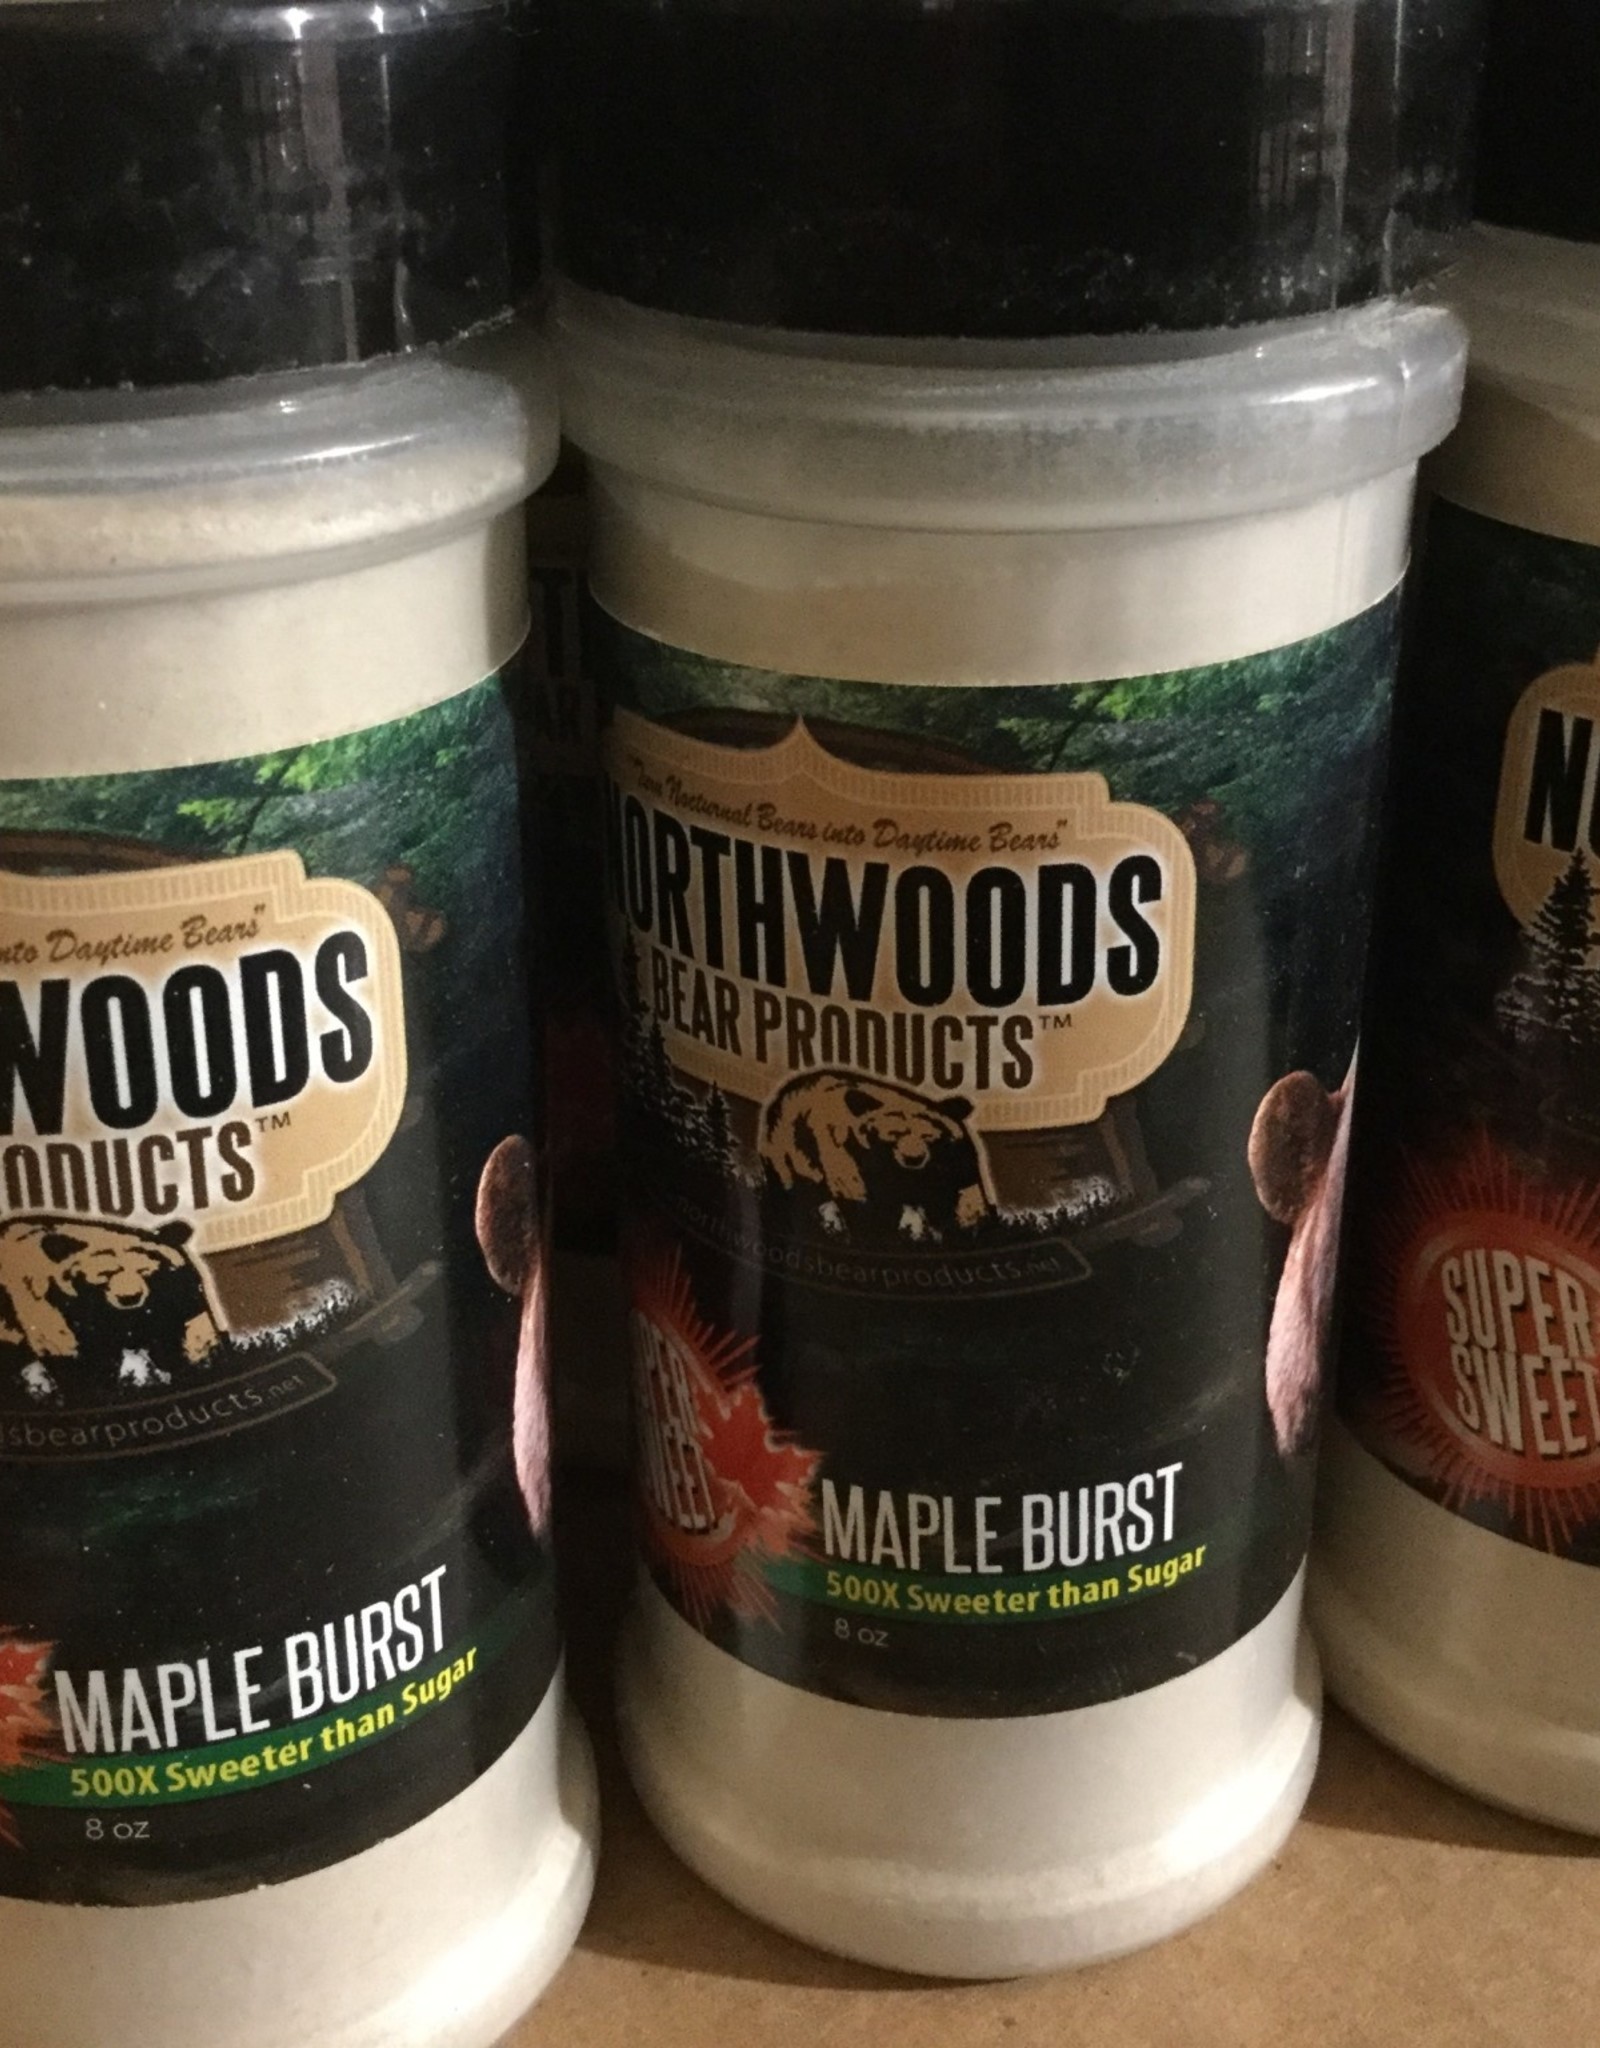 Northwoods Bear Products Maple Burst